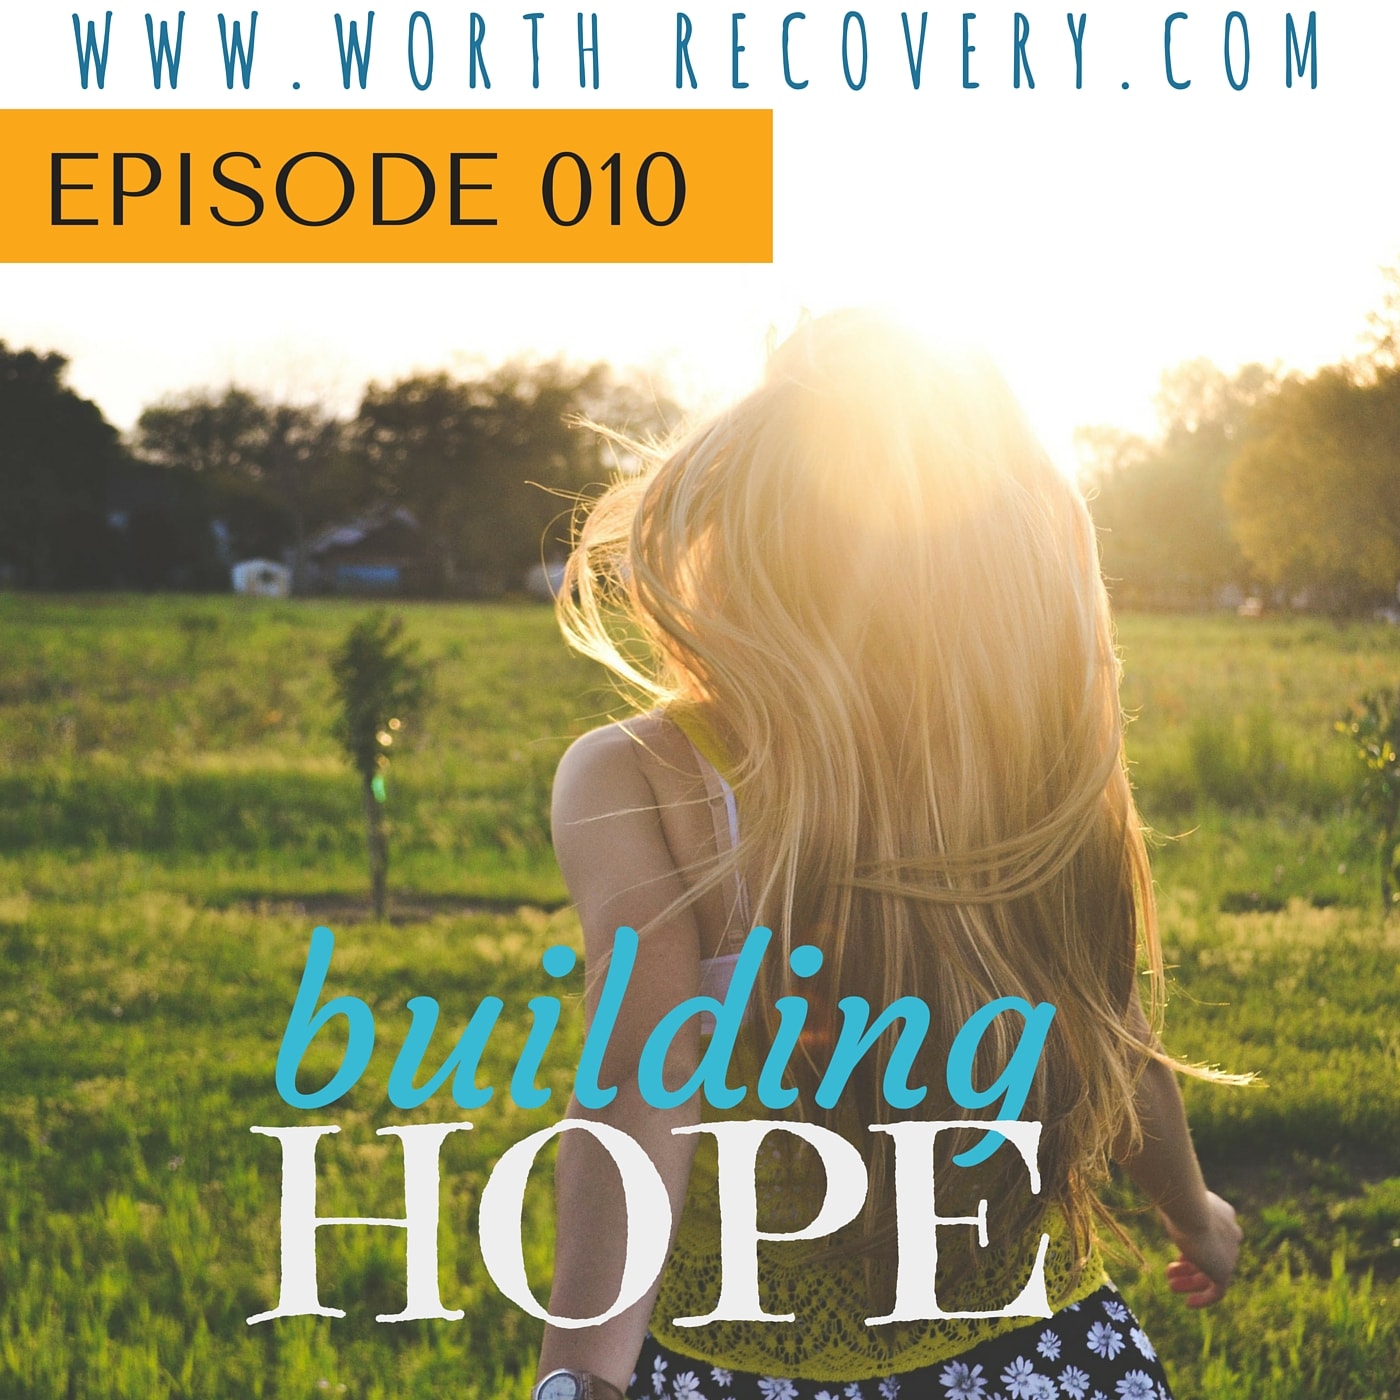 Episode 010: Building Hope